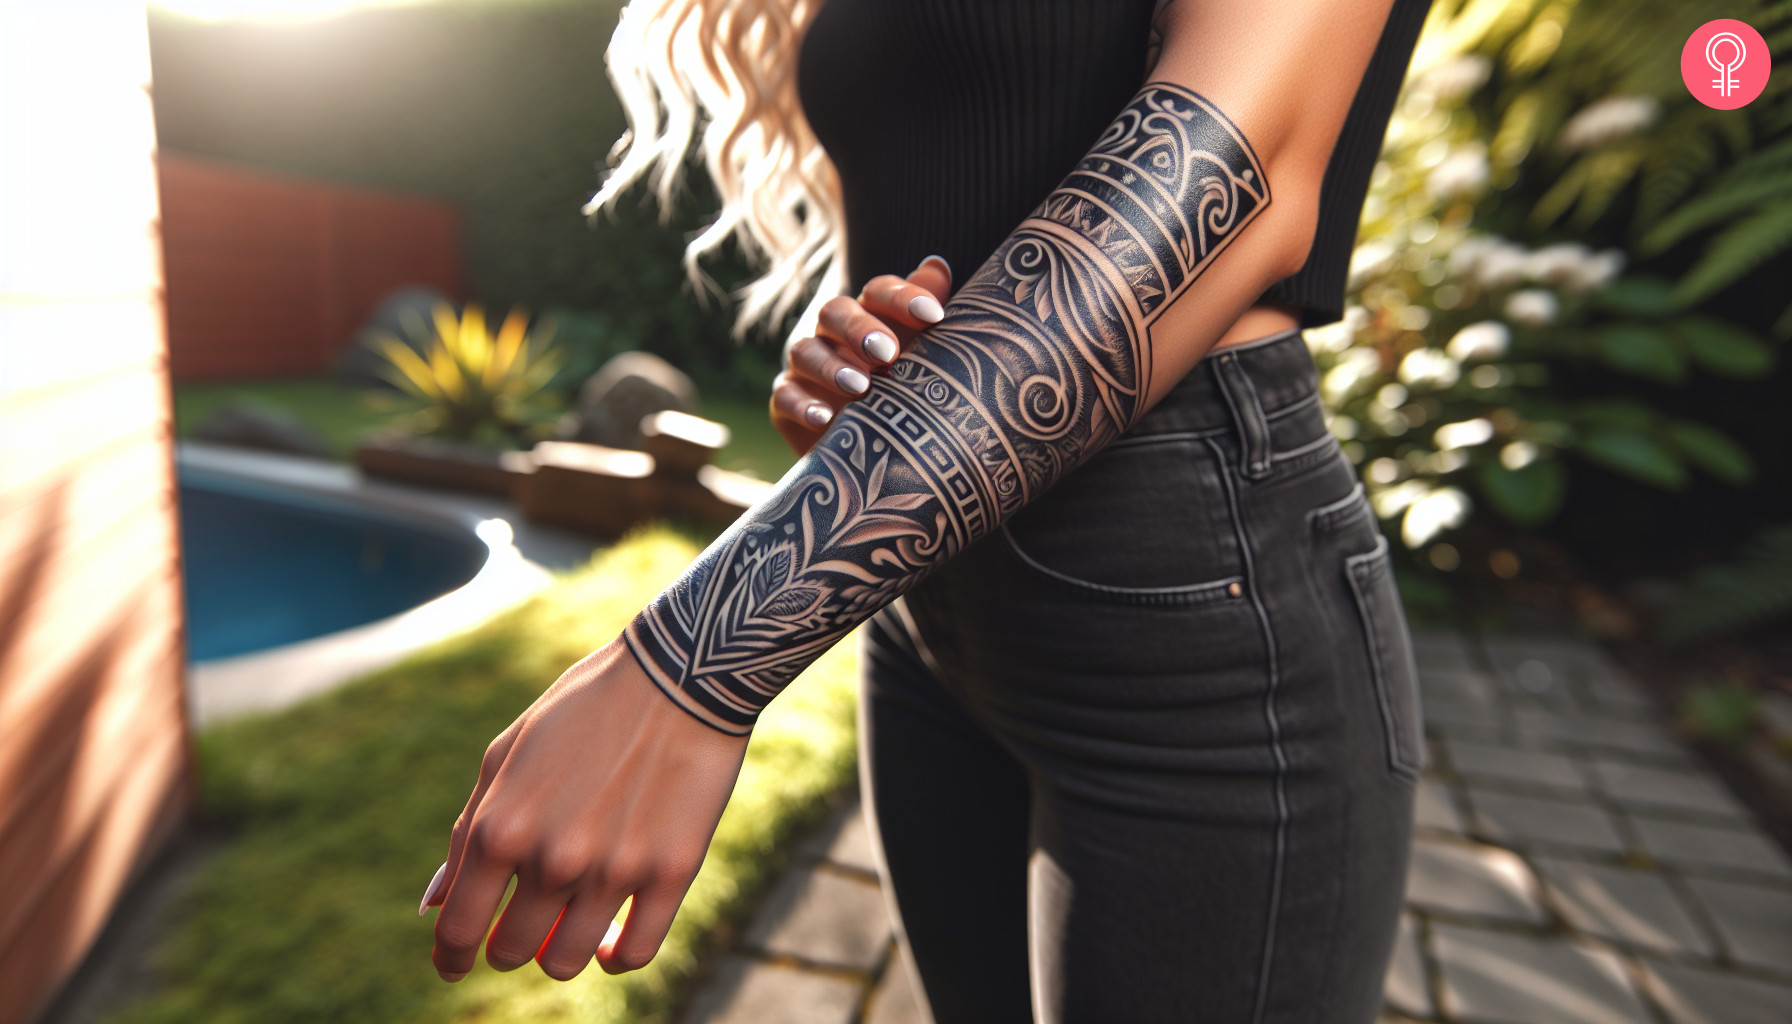 Geometric maori tattoo on the forearm of a woman